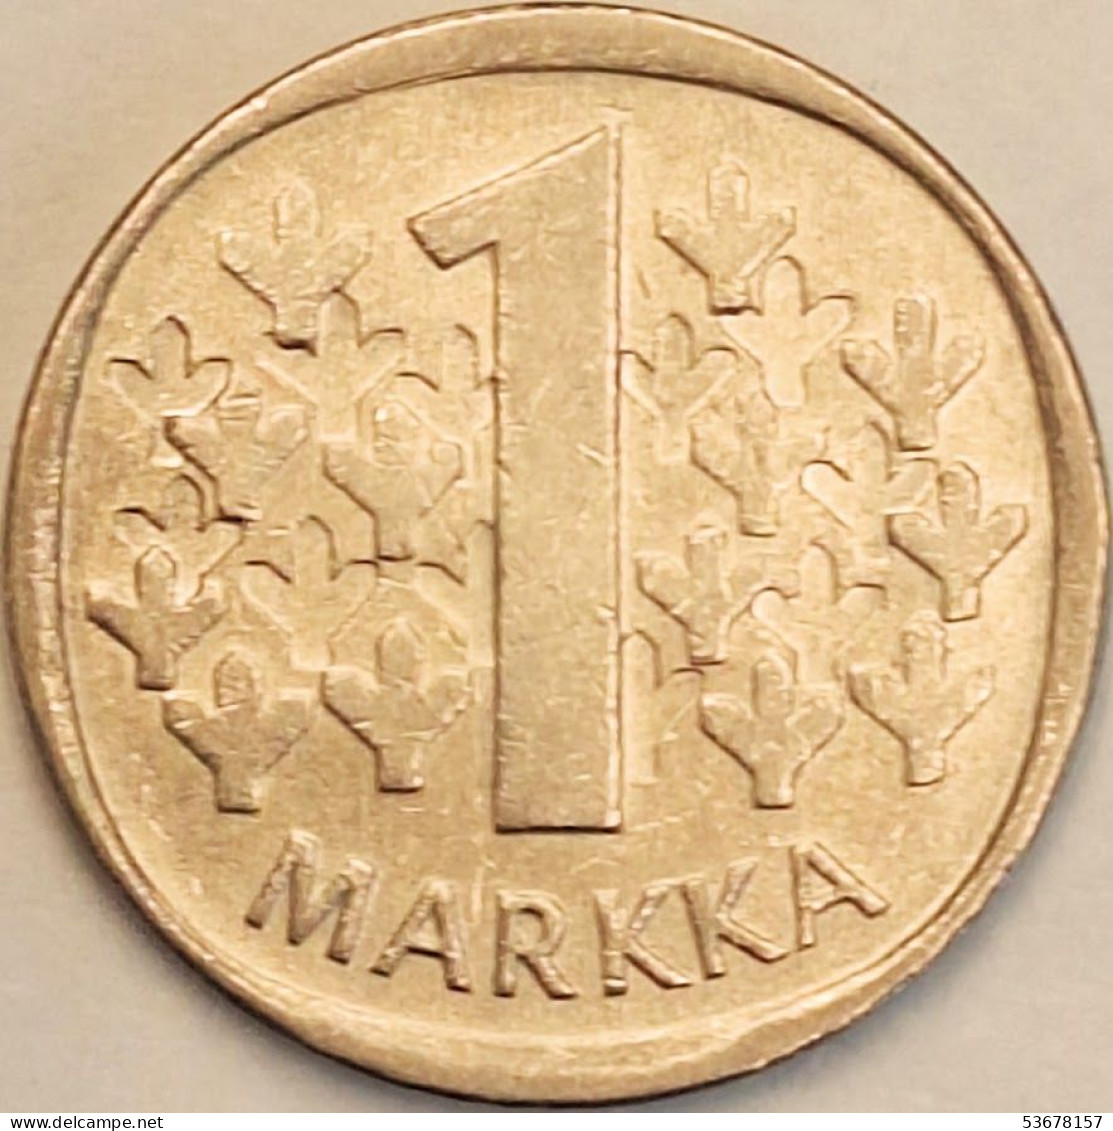 Finland - Markka 1981 K, KM# 49a (#3952) - Finland